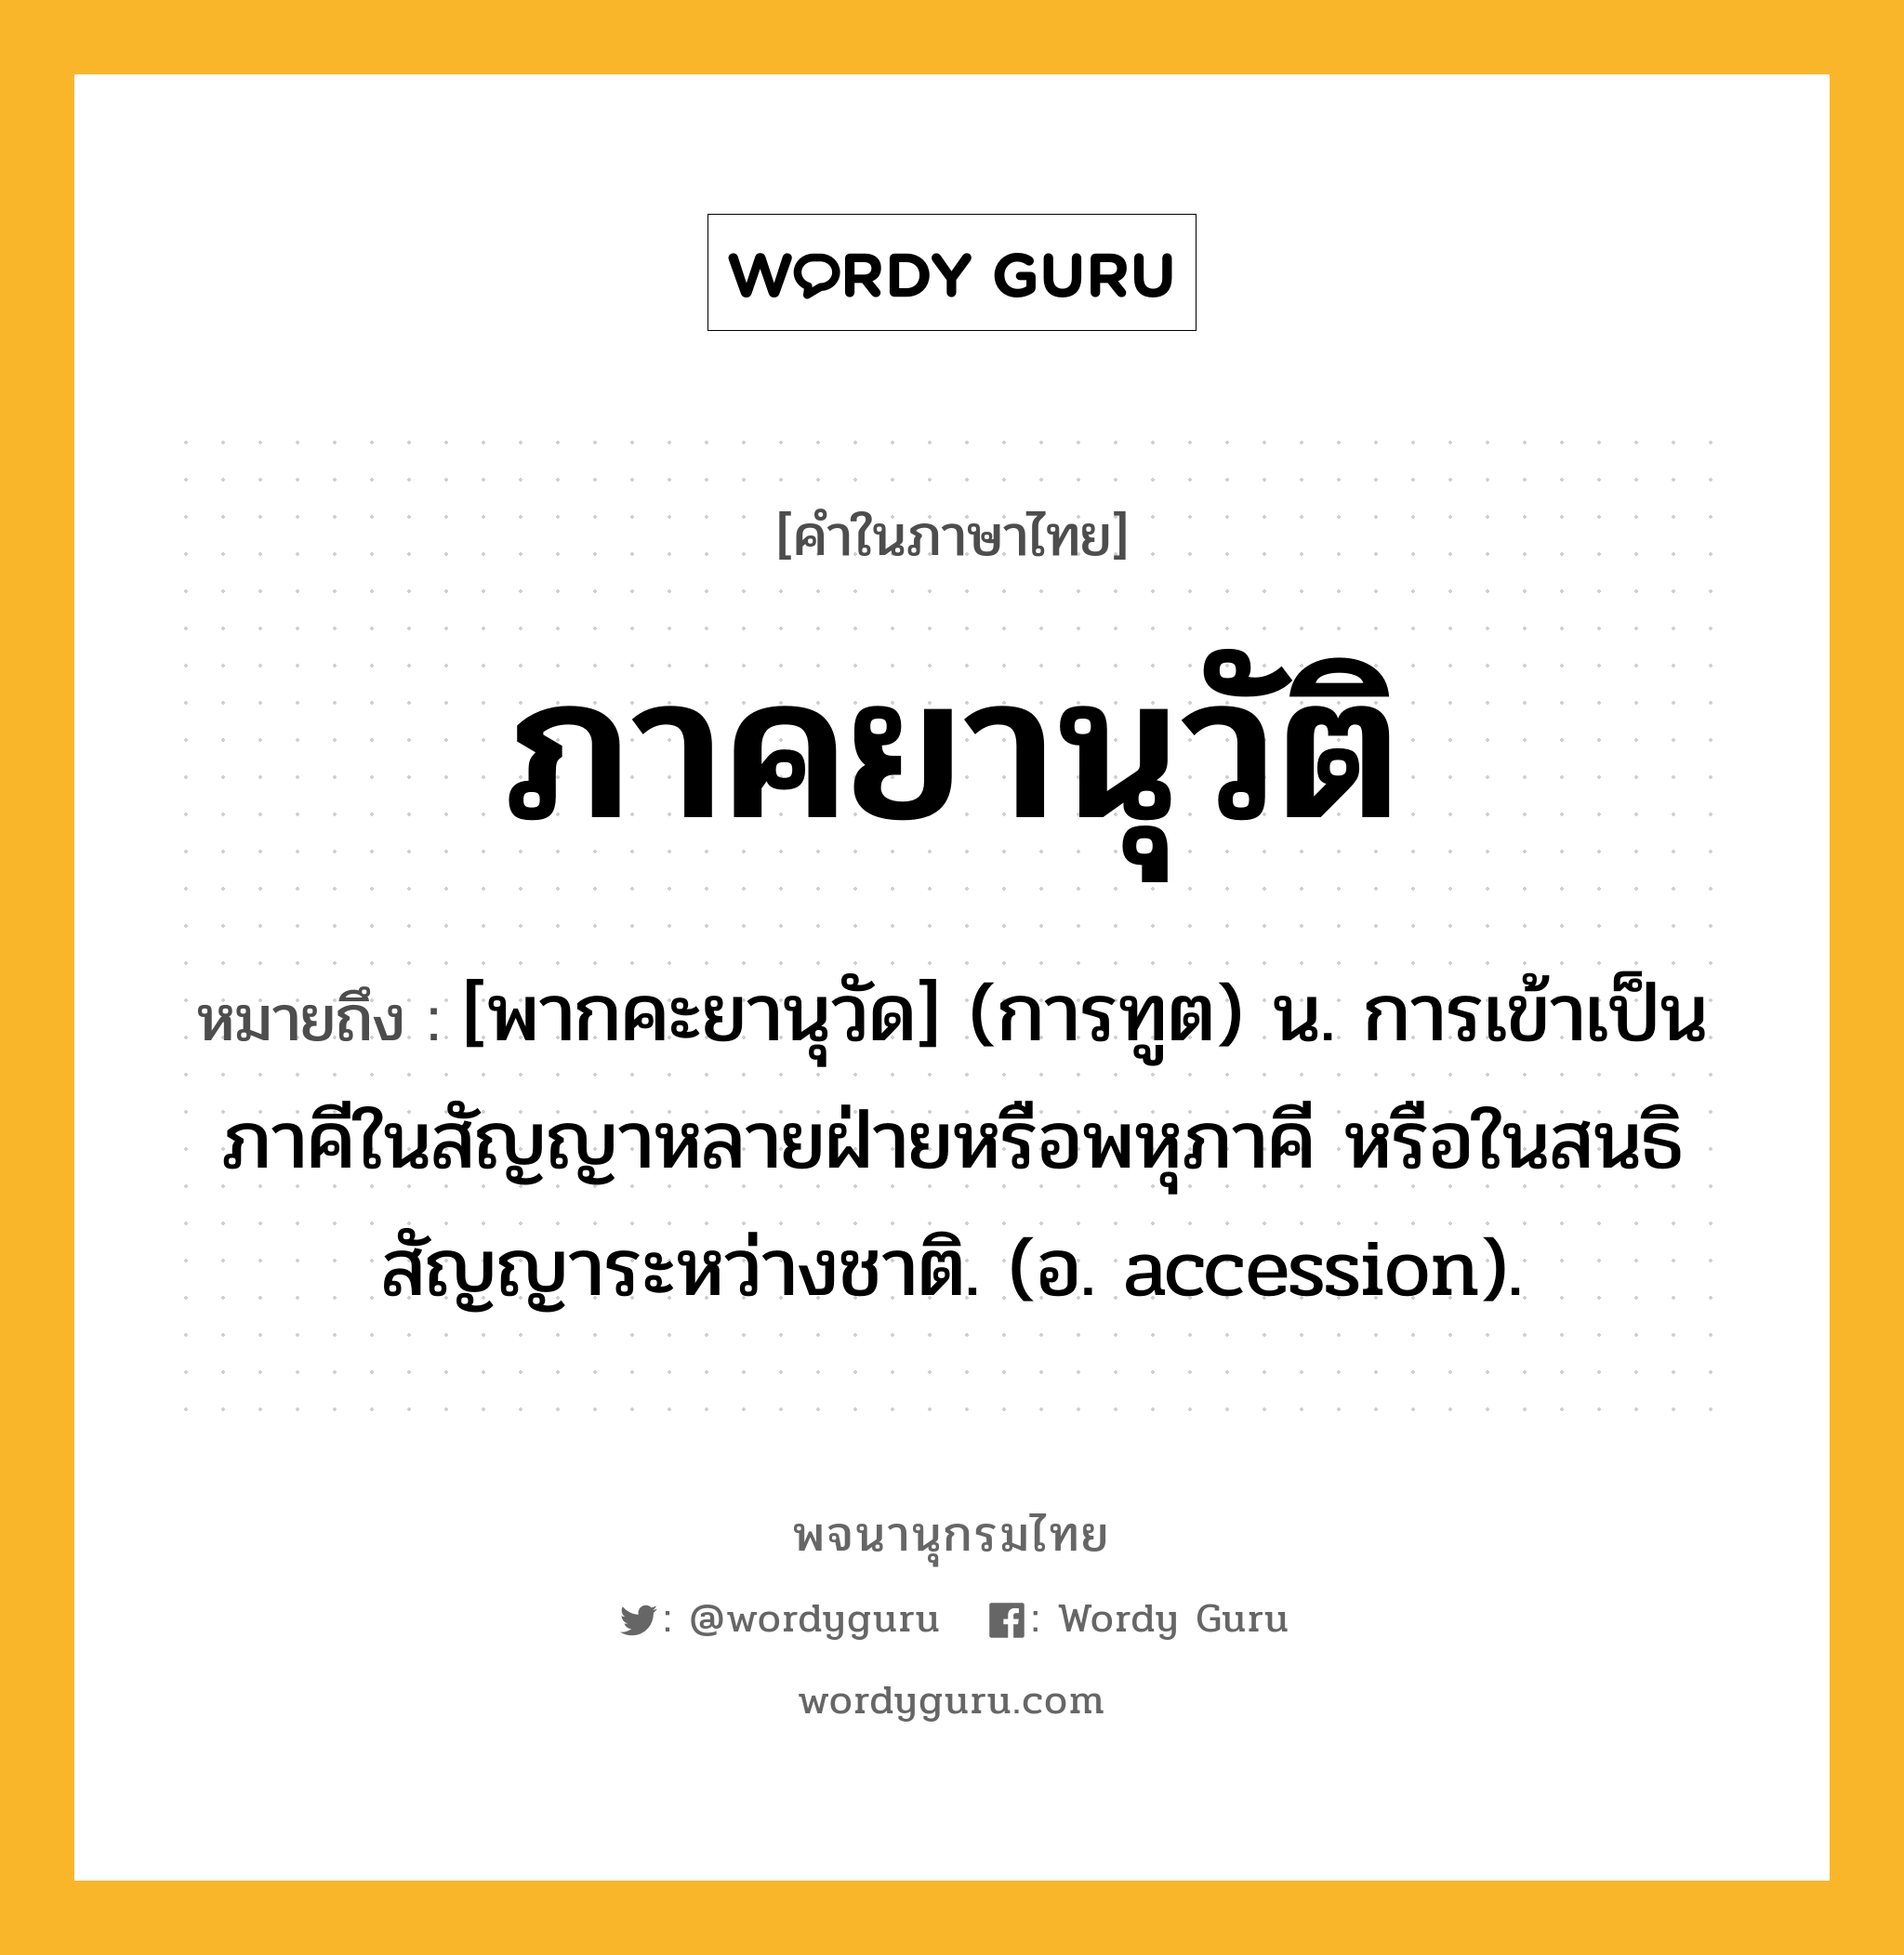 ภาคยานุวัติ ความหมาย หมายถึงอะไร?, คำในภาษาไทย ภาคยานุวัติ หมายถึง [พากคะยานุวัด] (การทูต) น. การเข้าเป็นภาคีในสัญญาหลายฝ่ายหรือพหุภาคี หรือในสนธิสัญญาระหว่างชาติ. (อ. accession).